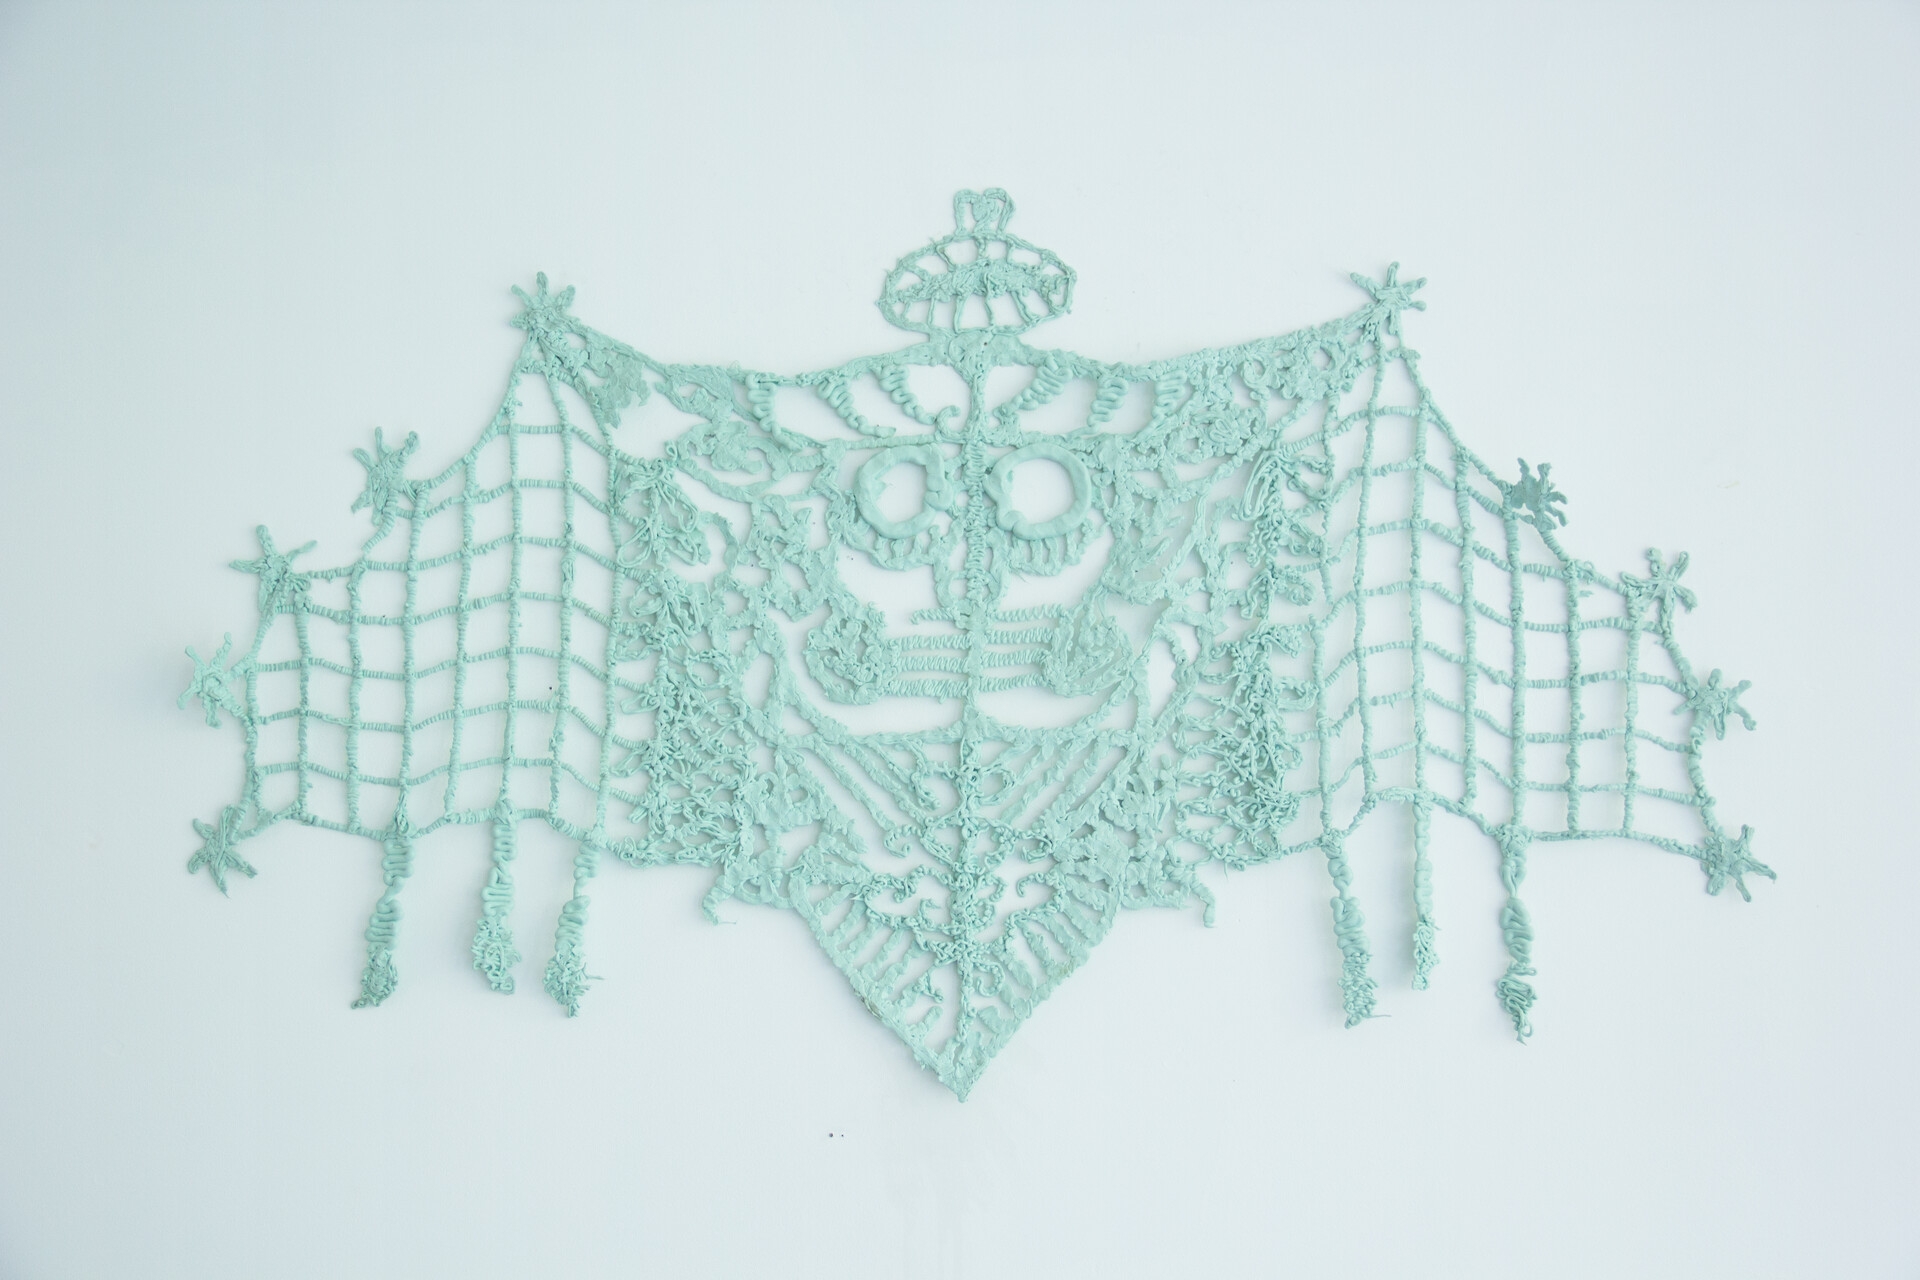 Wappen 5, 154×84cm, 2022, Silicone